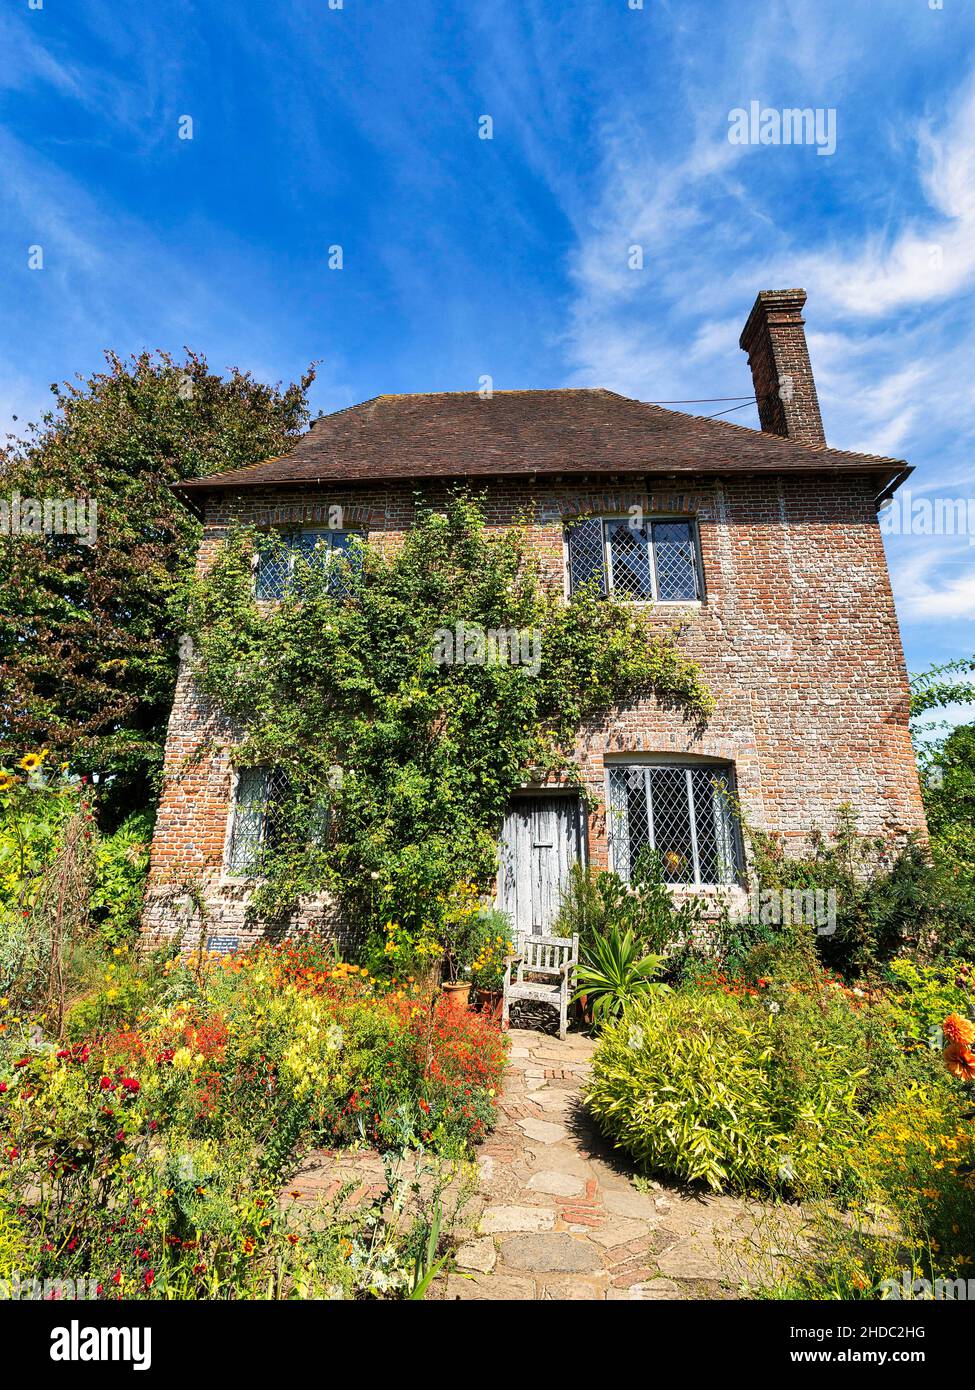 Cottage en briques rouges avec jardin fleuri, South Cottage, Château et jardin de Sissinghurst, Cranbrook, Kent, Angleterre, Royaume-Uni Banque D'Images